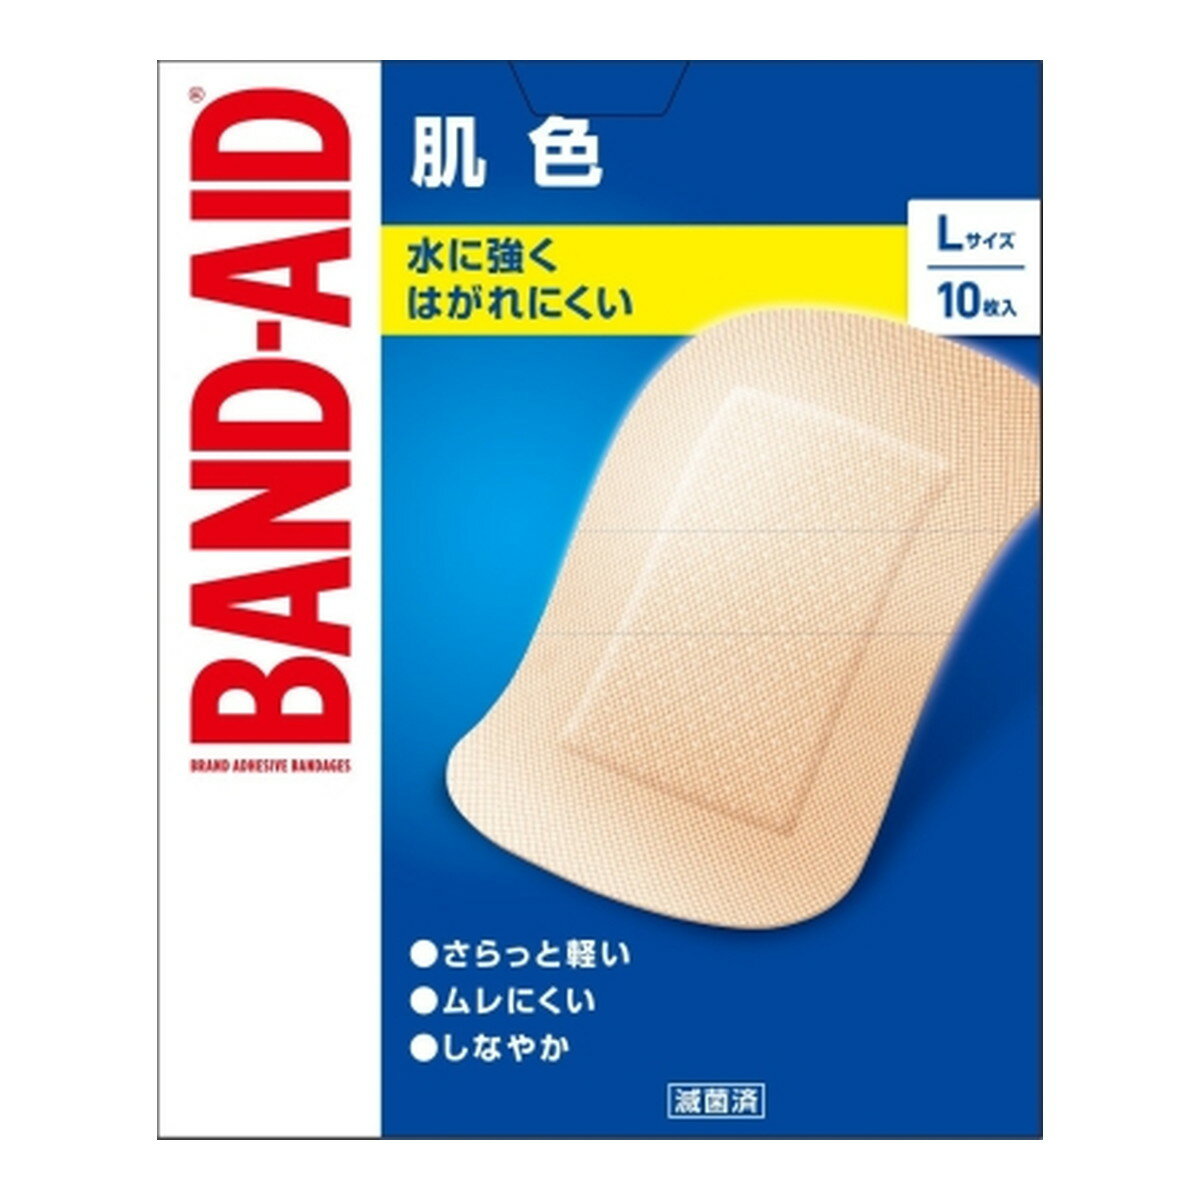 BAND-AID バンドエイド 肌色 Lサイズ 10枚入